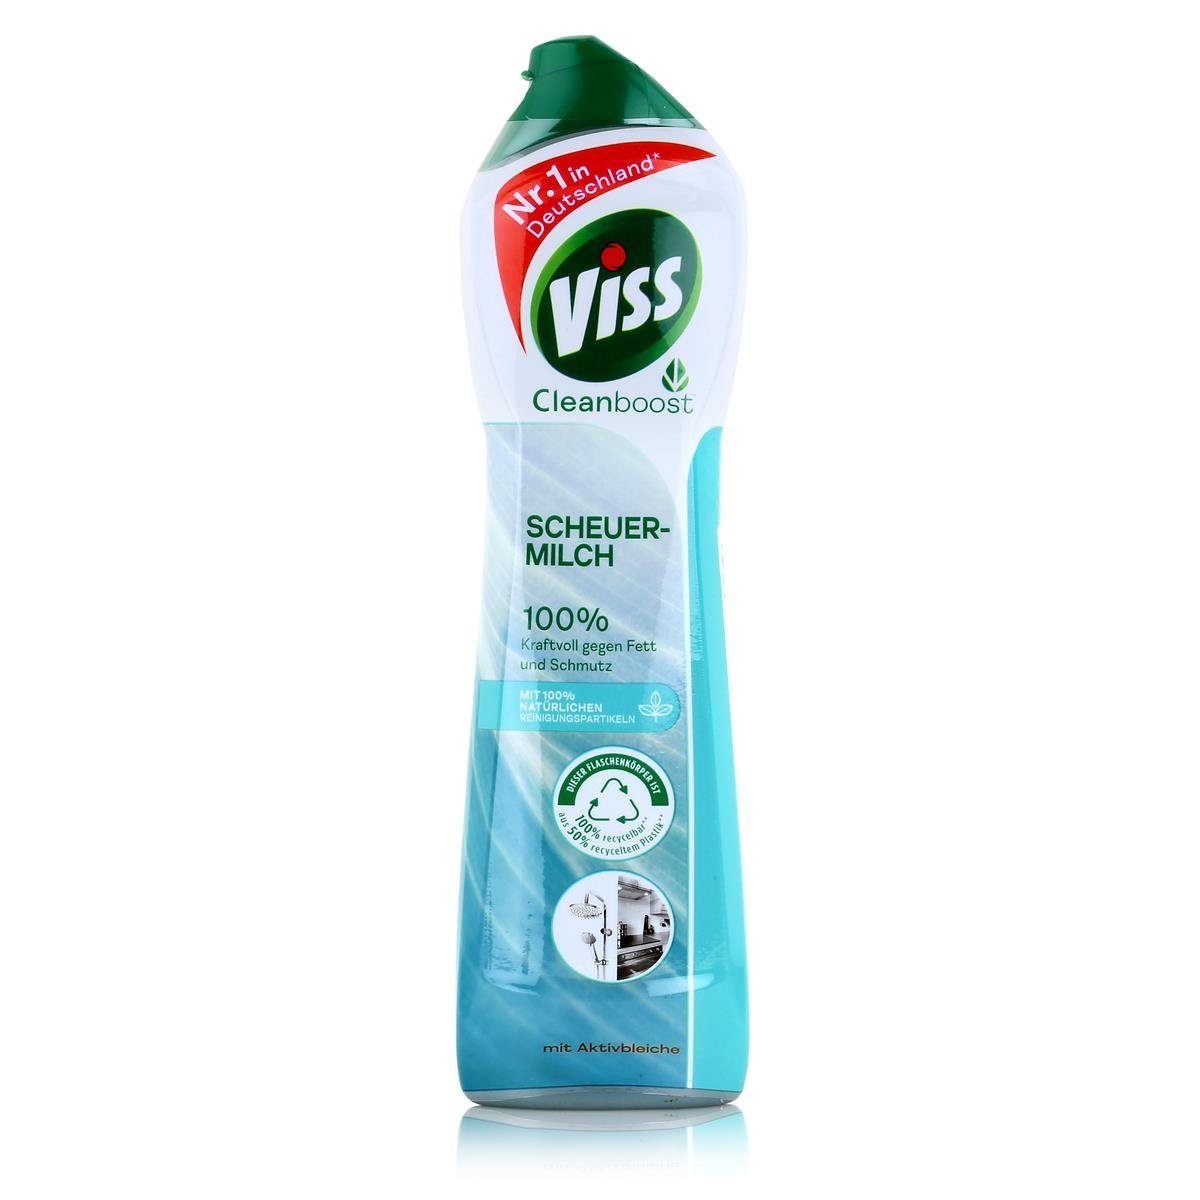 Viss Viss Cleanboost Scheuer-Milch mit Aktivbleiche 500ml (1er Pack) Універсальний засіб для чищення